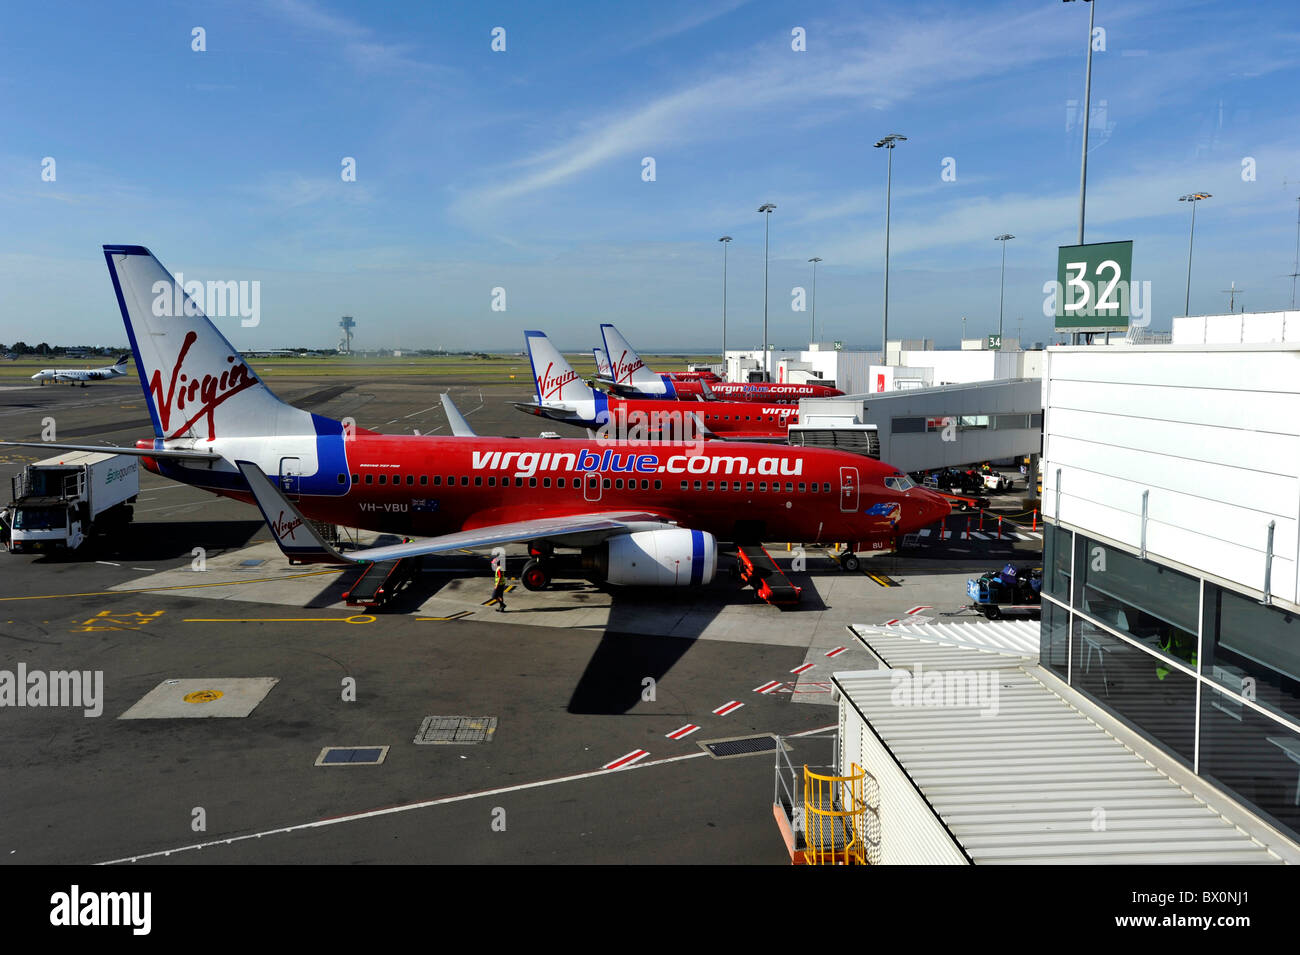 Sydney Airport terminal interna del avión y Virgin. Foto de stock